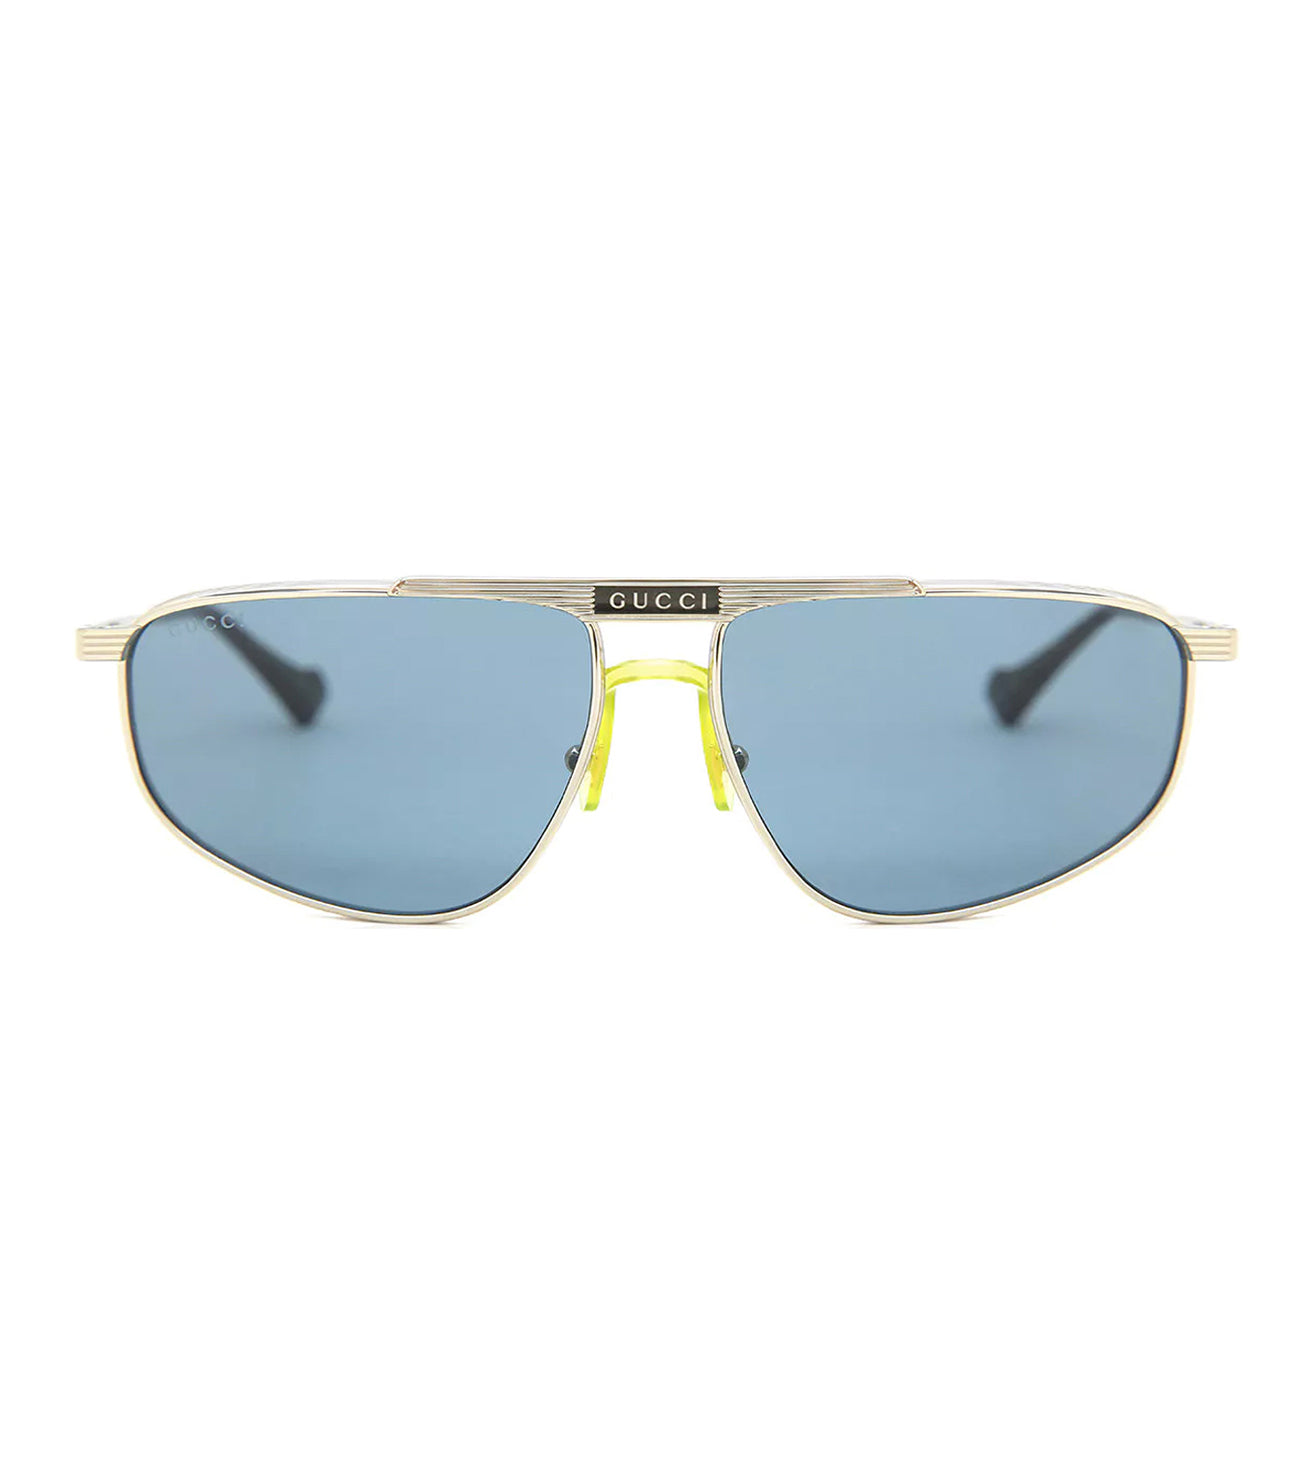 Gucci Unisex Blue Rectangular Sunglasses